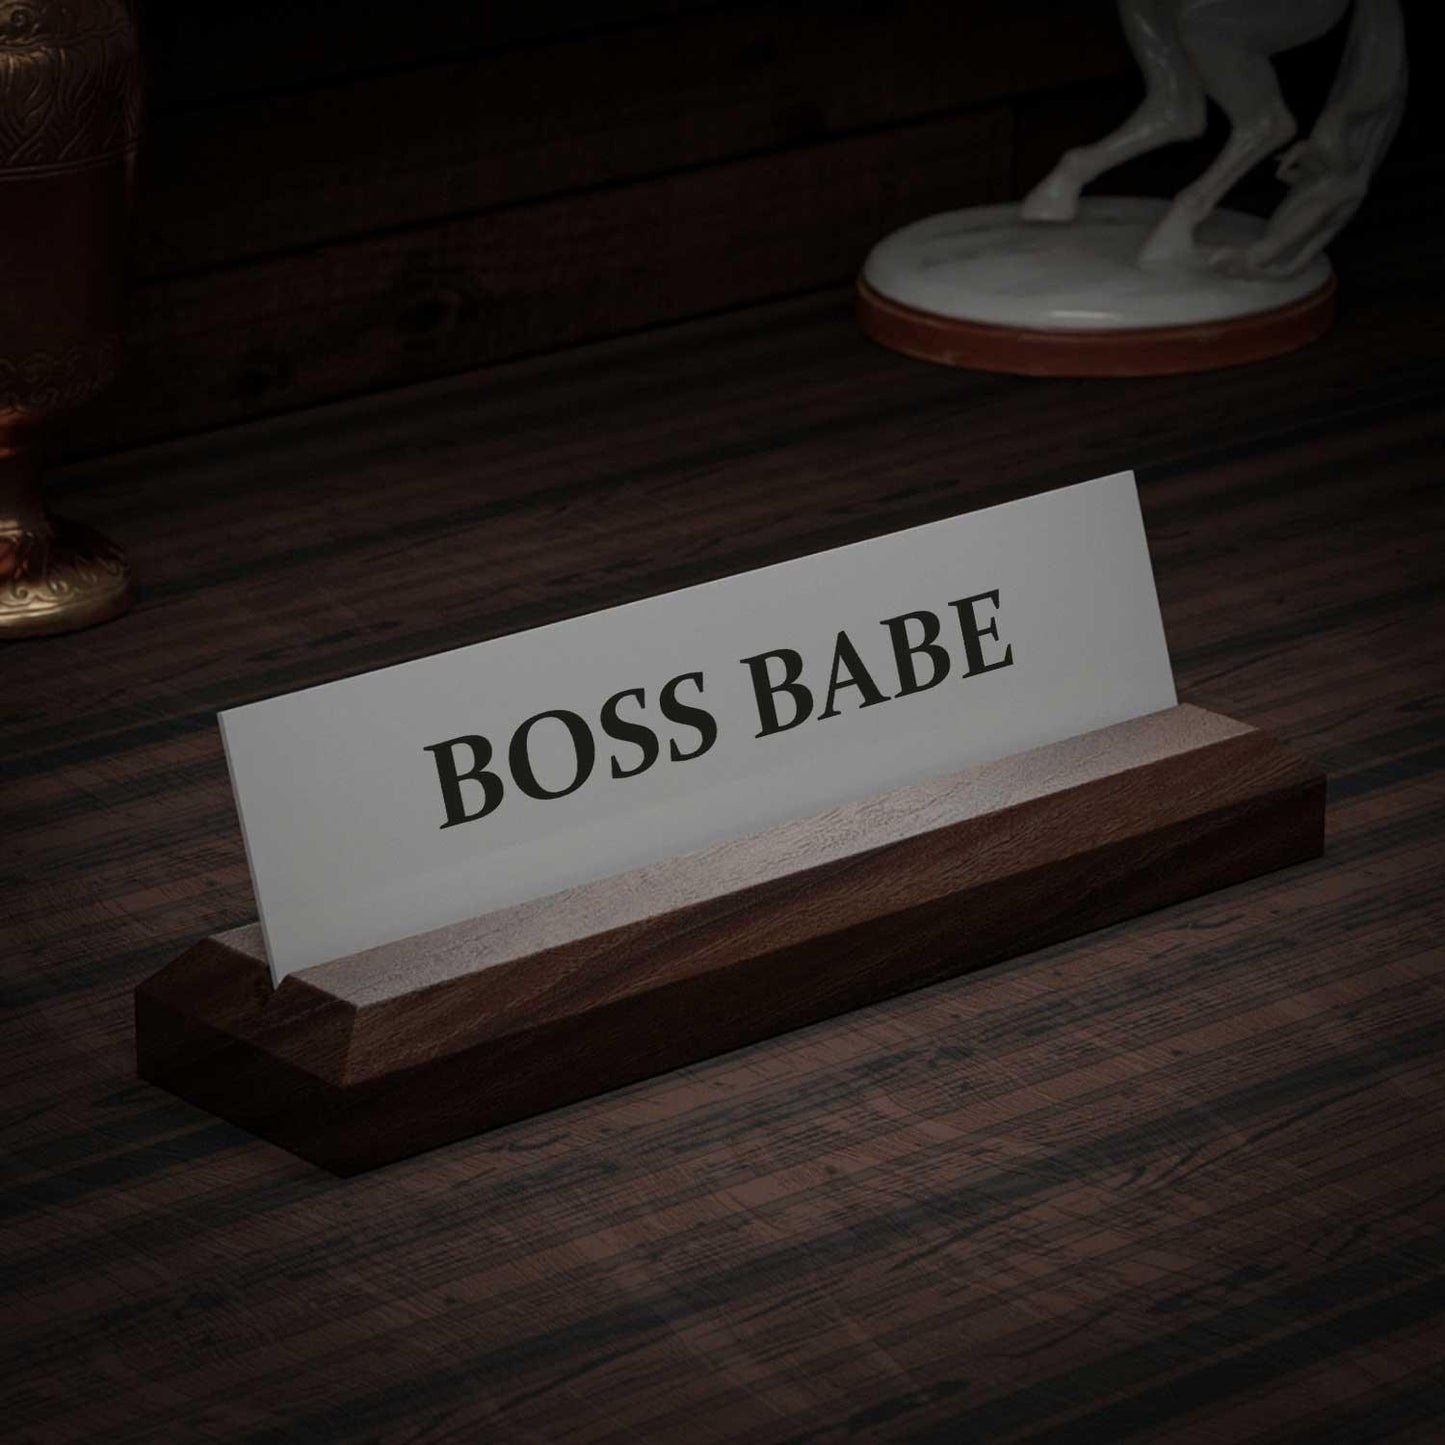 Excelus Office Desk Name Plate - Boss Babe - Housenama